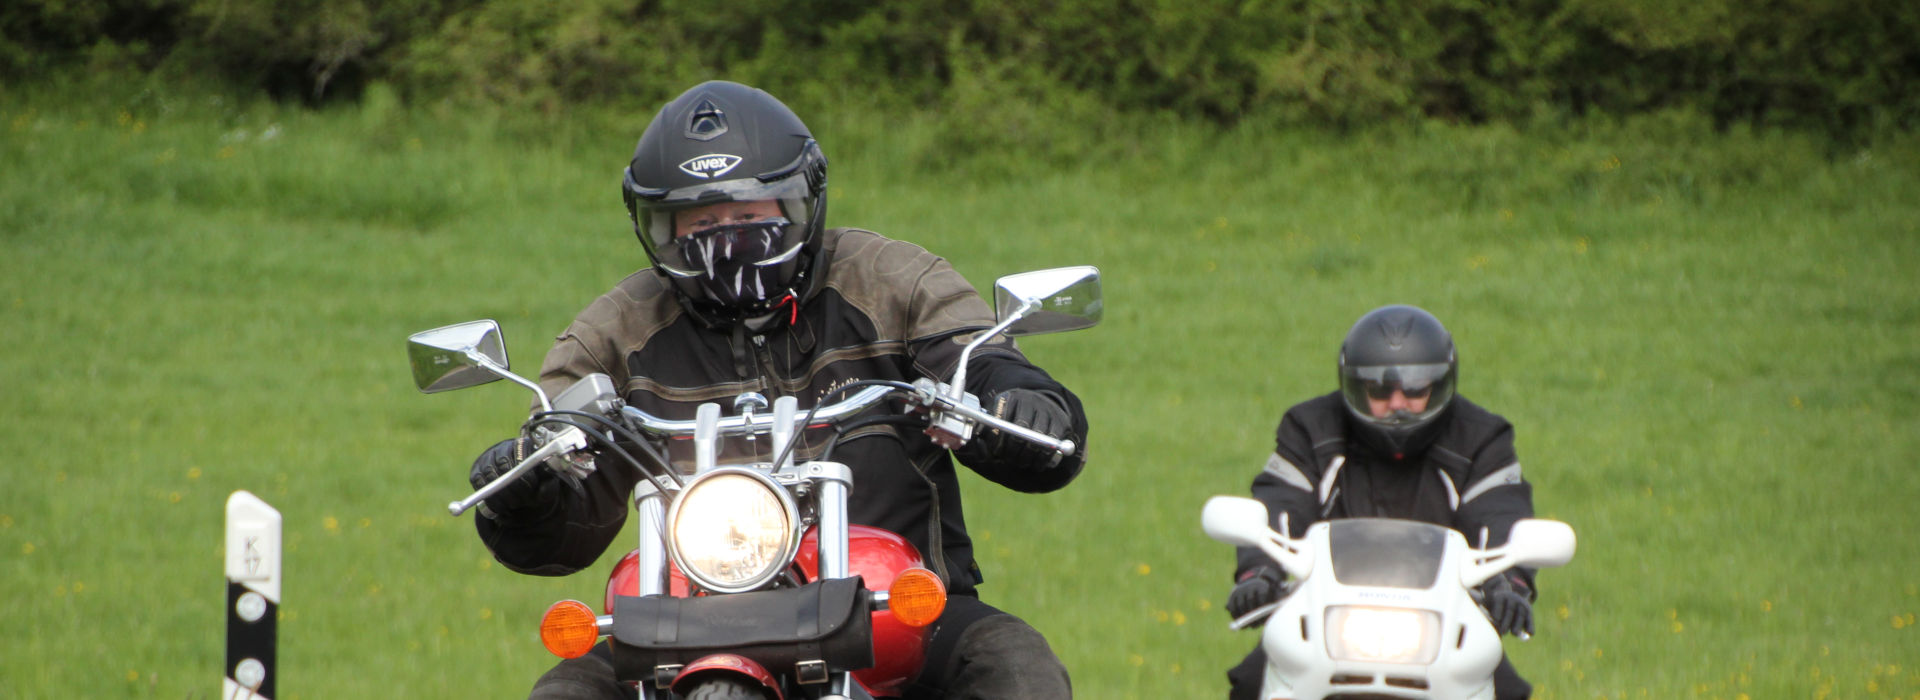 Motorrijschool Motorrijbewijspoint Breda motorrijlessen